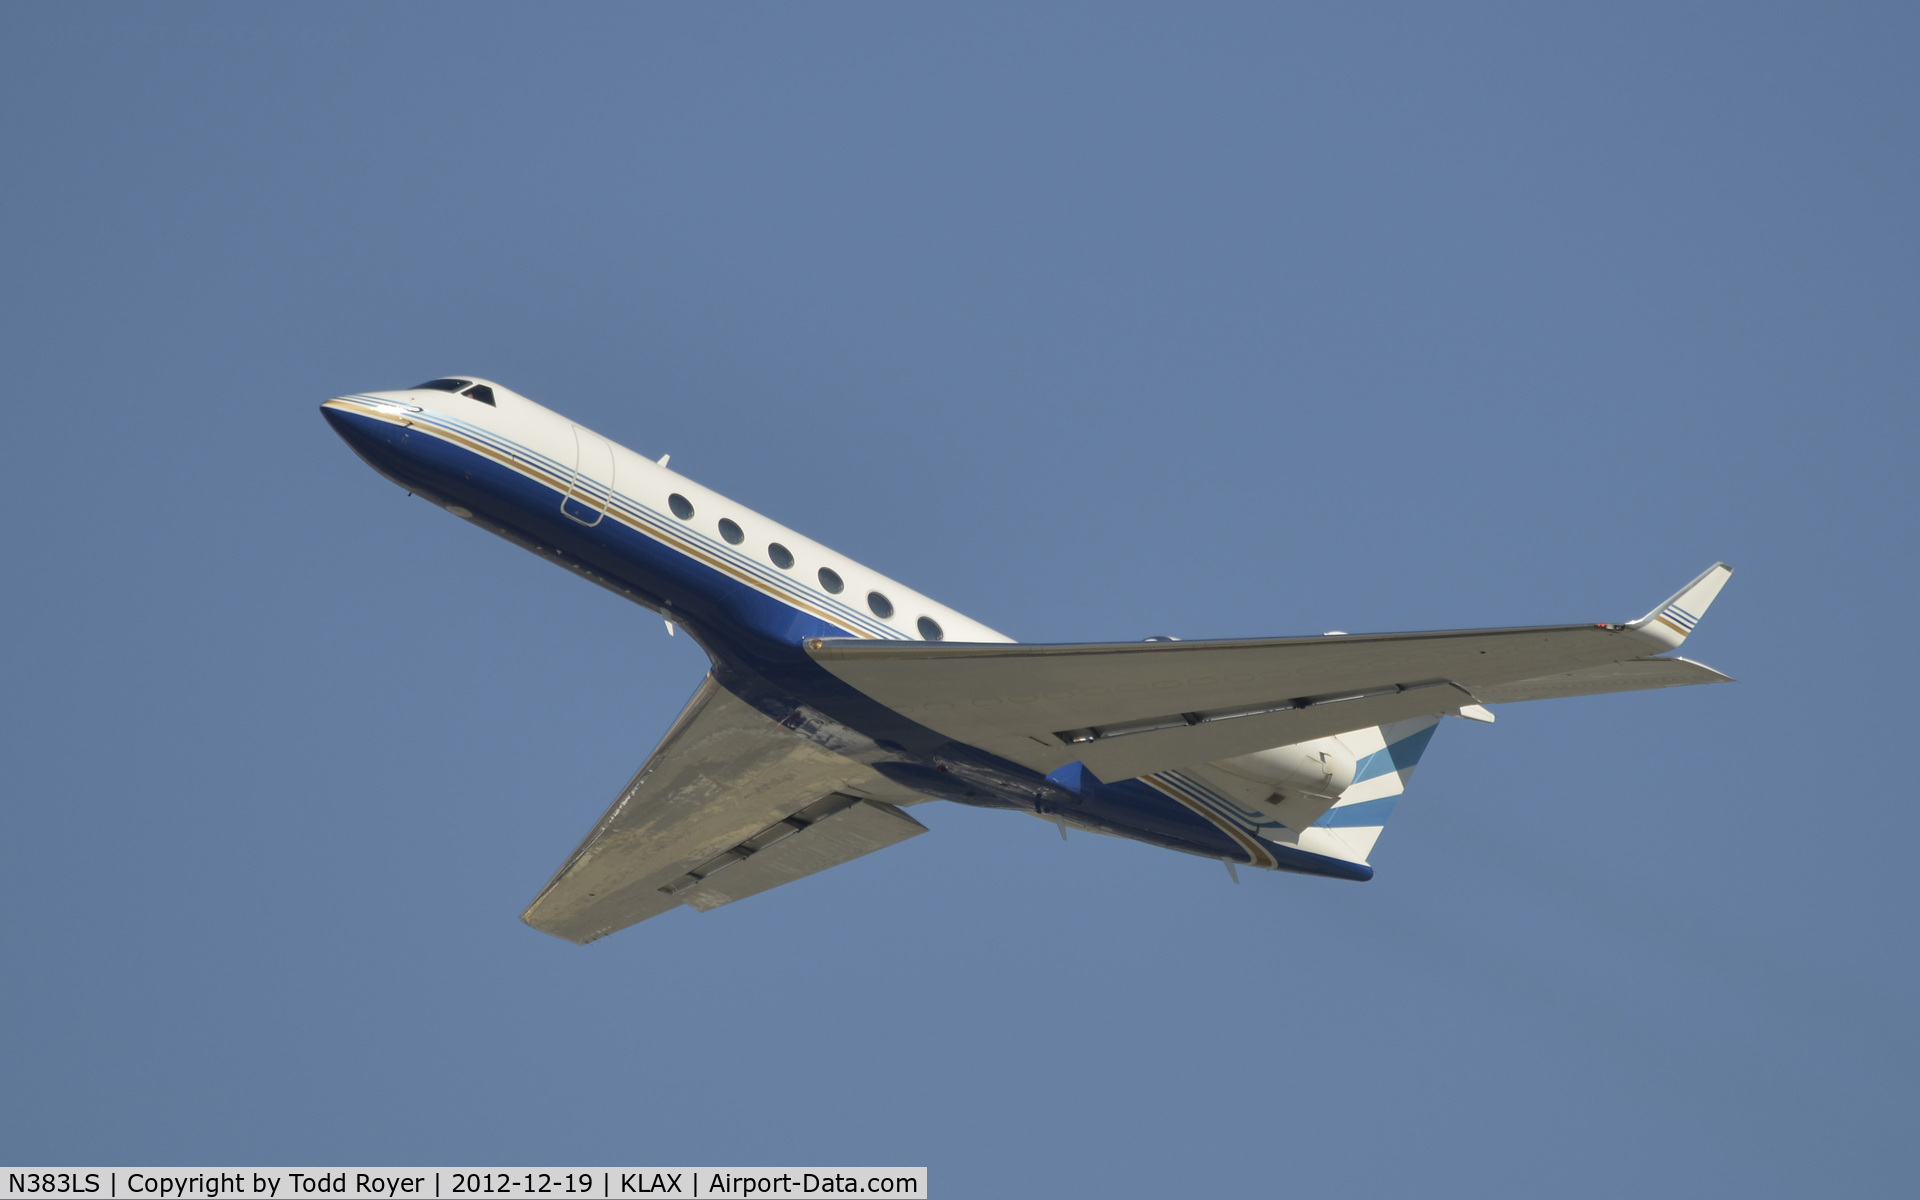 N383LS, 1998 Gulfstream Aerospace G-IV C/N 544, Departing LAX